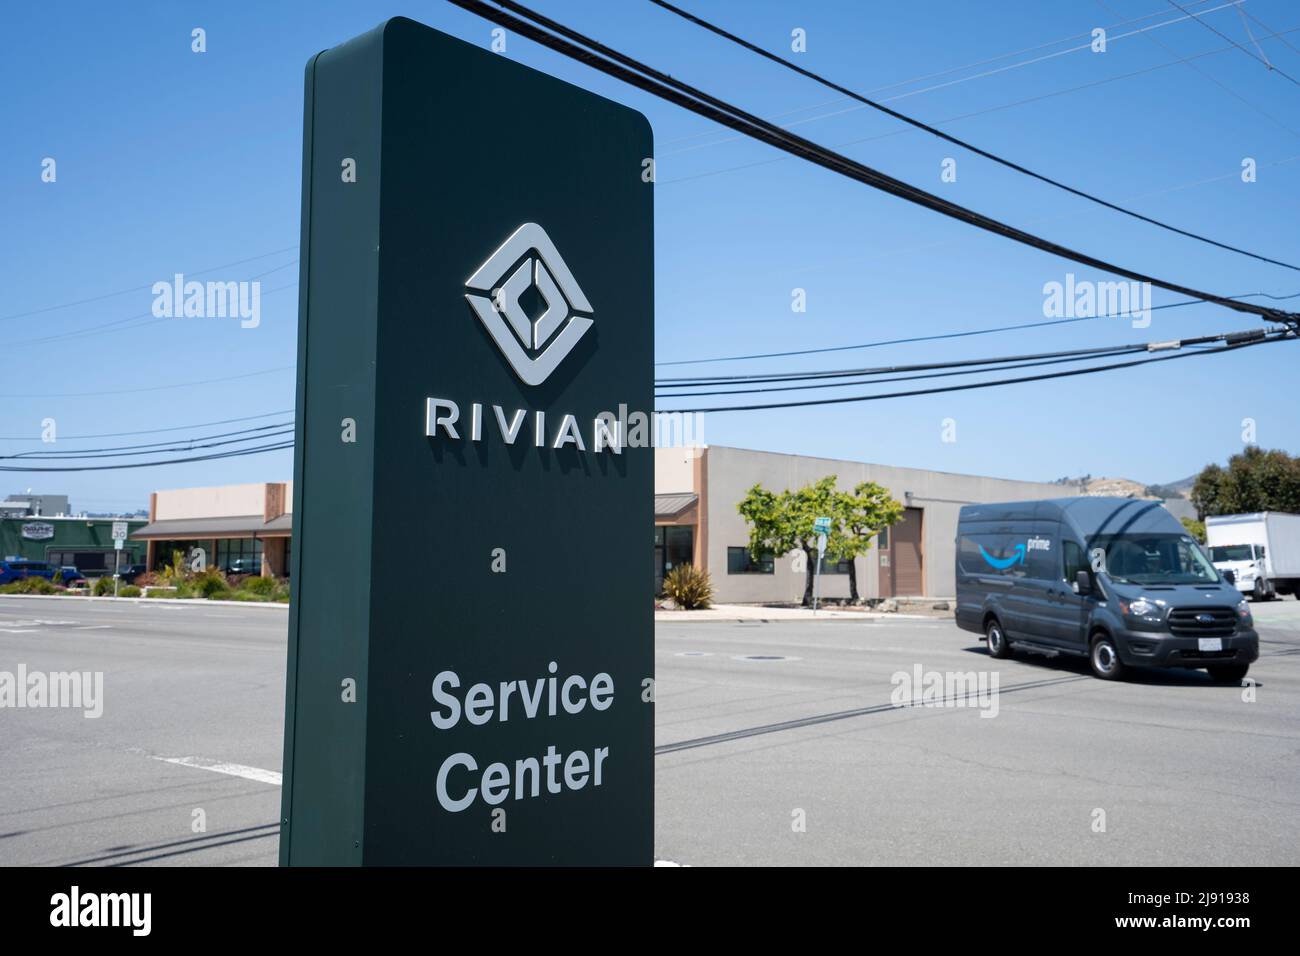 Le panneau de Rivian est visible dans un centre de service de Rivian, avec une fourgonnette de transport Ford de marque Amazon Prime passant dans les rues en arrière-plan, sur 1 mai 2022. Banque D'Images